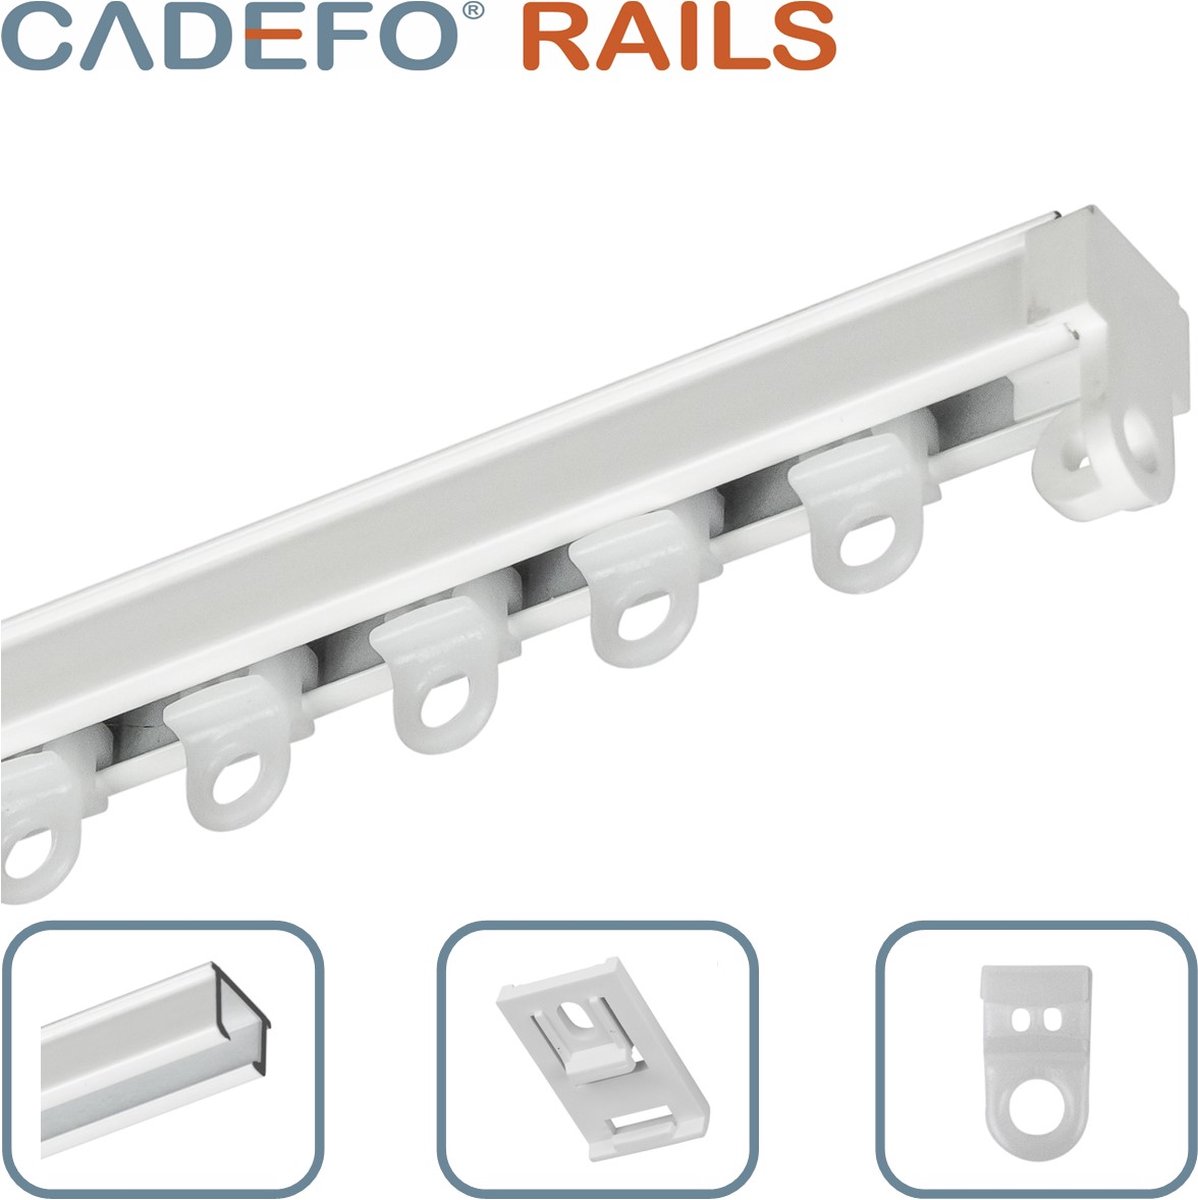 CADEFO RAILS (501 - 550 cm) Gordijnrails - Compleet op maat! - UIT 1 STUK - Leverbaar tot 6 meter - Plafondbevestiging - Lengte 504 cm